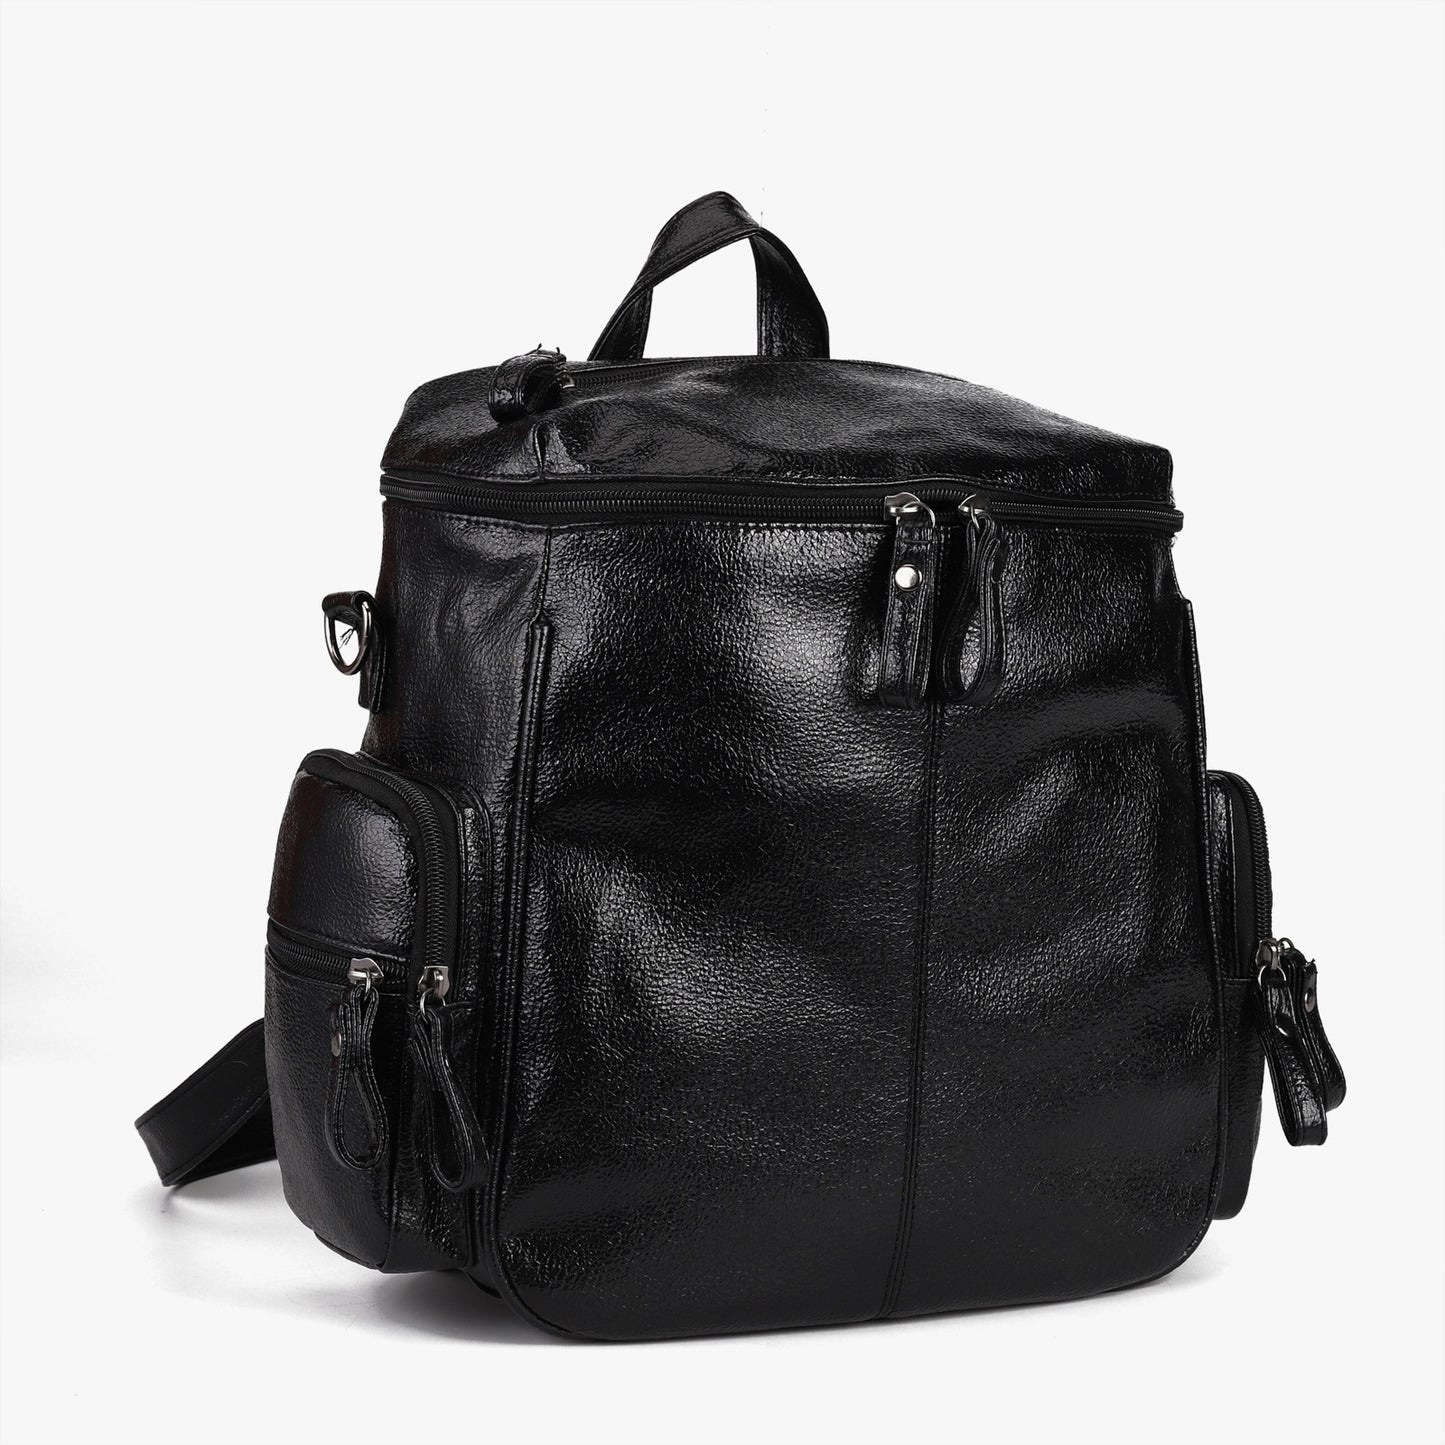 Backpack Student One-shoulder Rivet Design